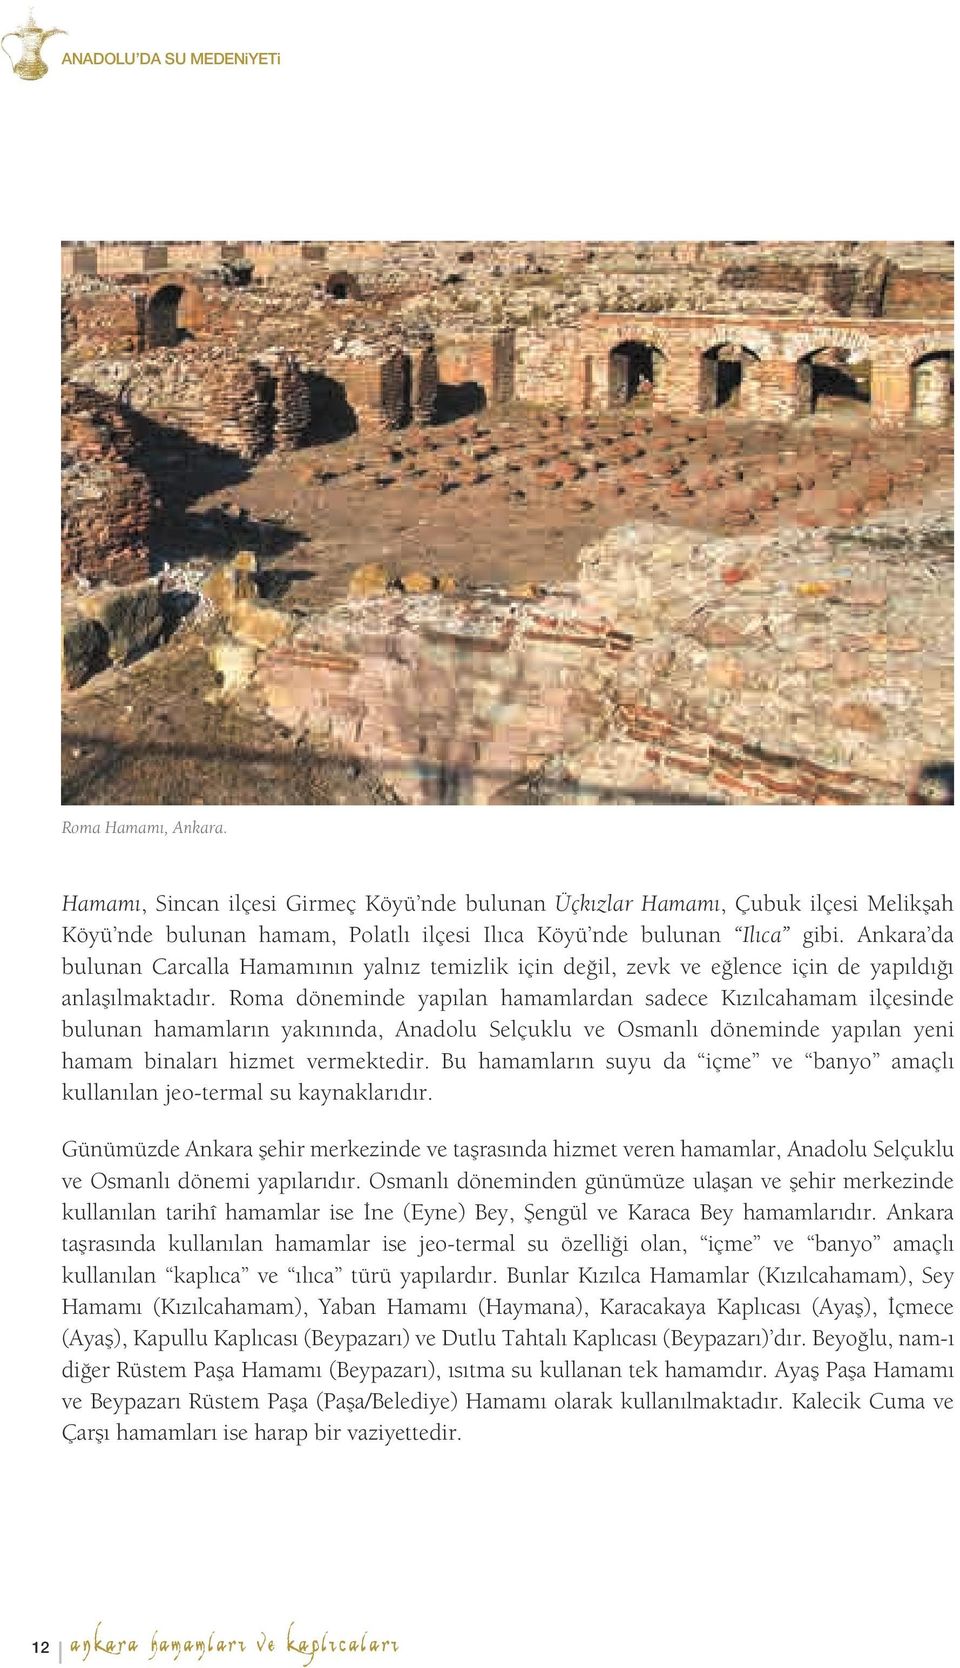 Roma döneminde yapılan hamamlardan sadece Kızılcahamam ilçesinde bulunan hamamların yakınında, Anadolu Selçuklu ve Osmanlı döneminde yapılan yeni hamam binaları hizmet vermektedir.